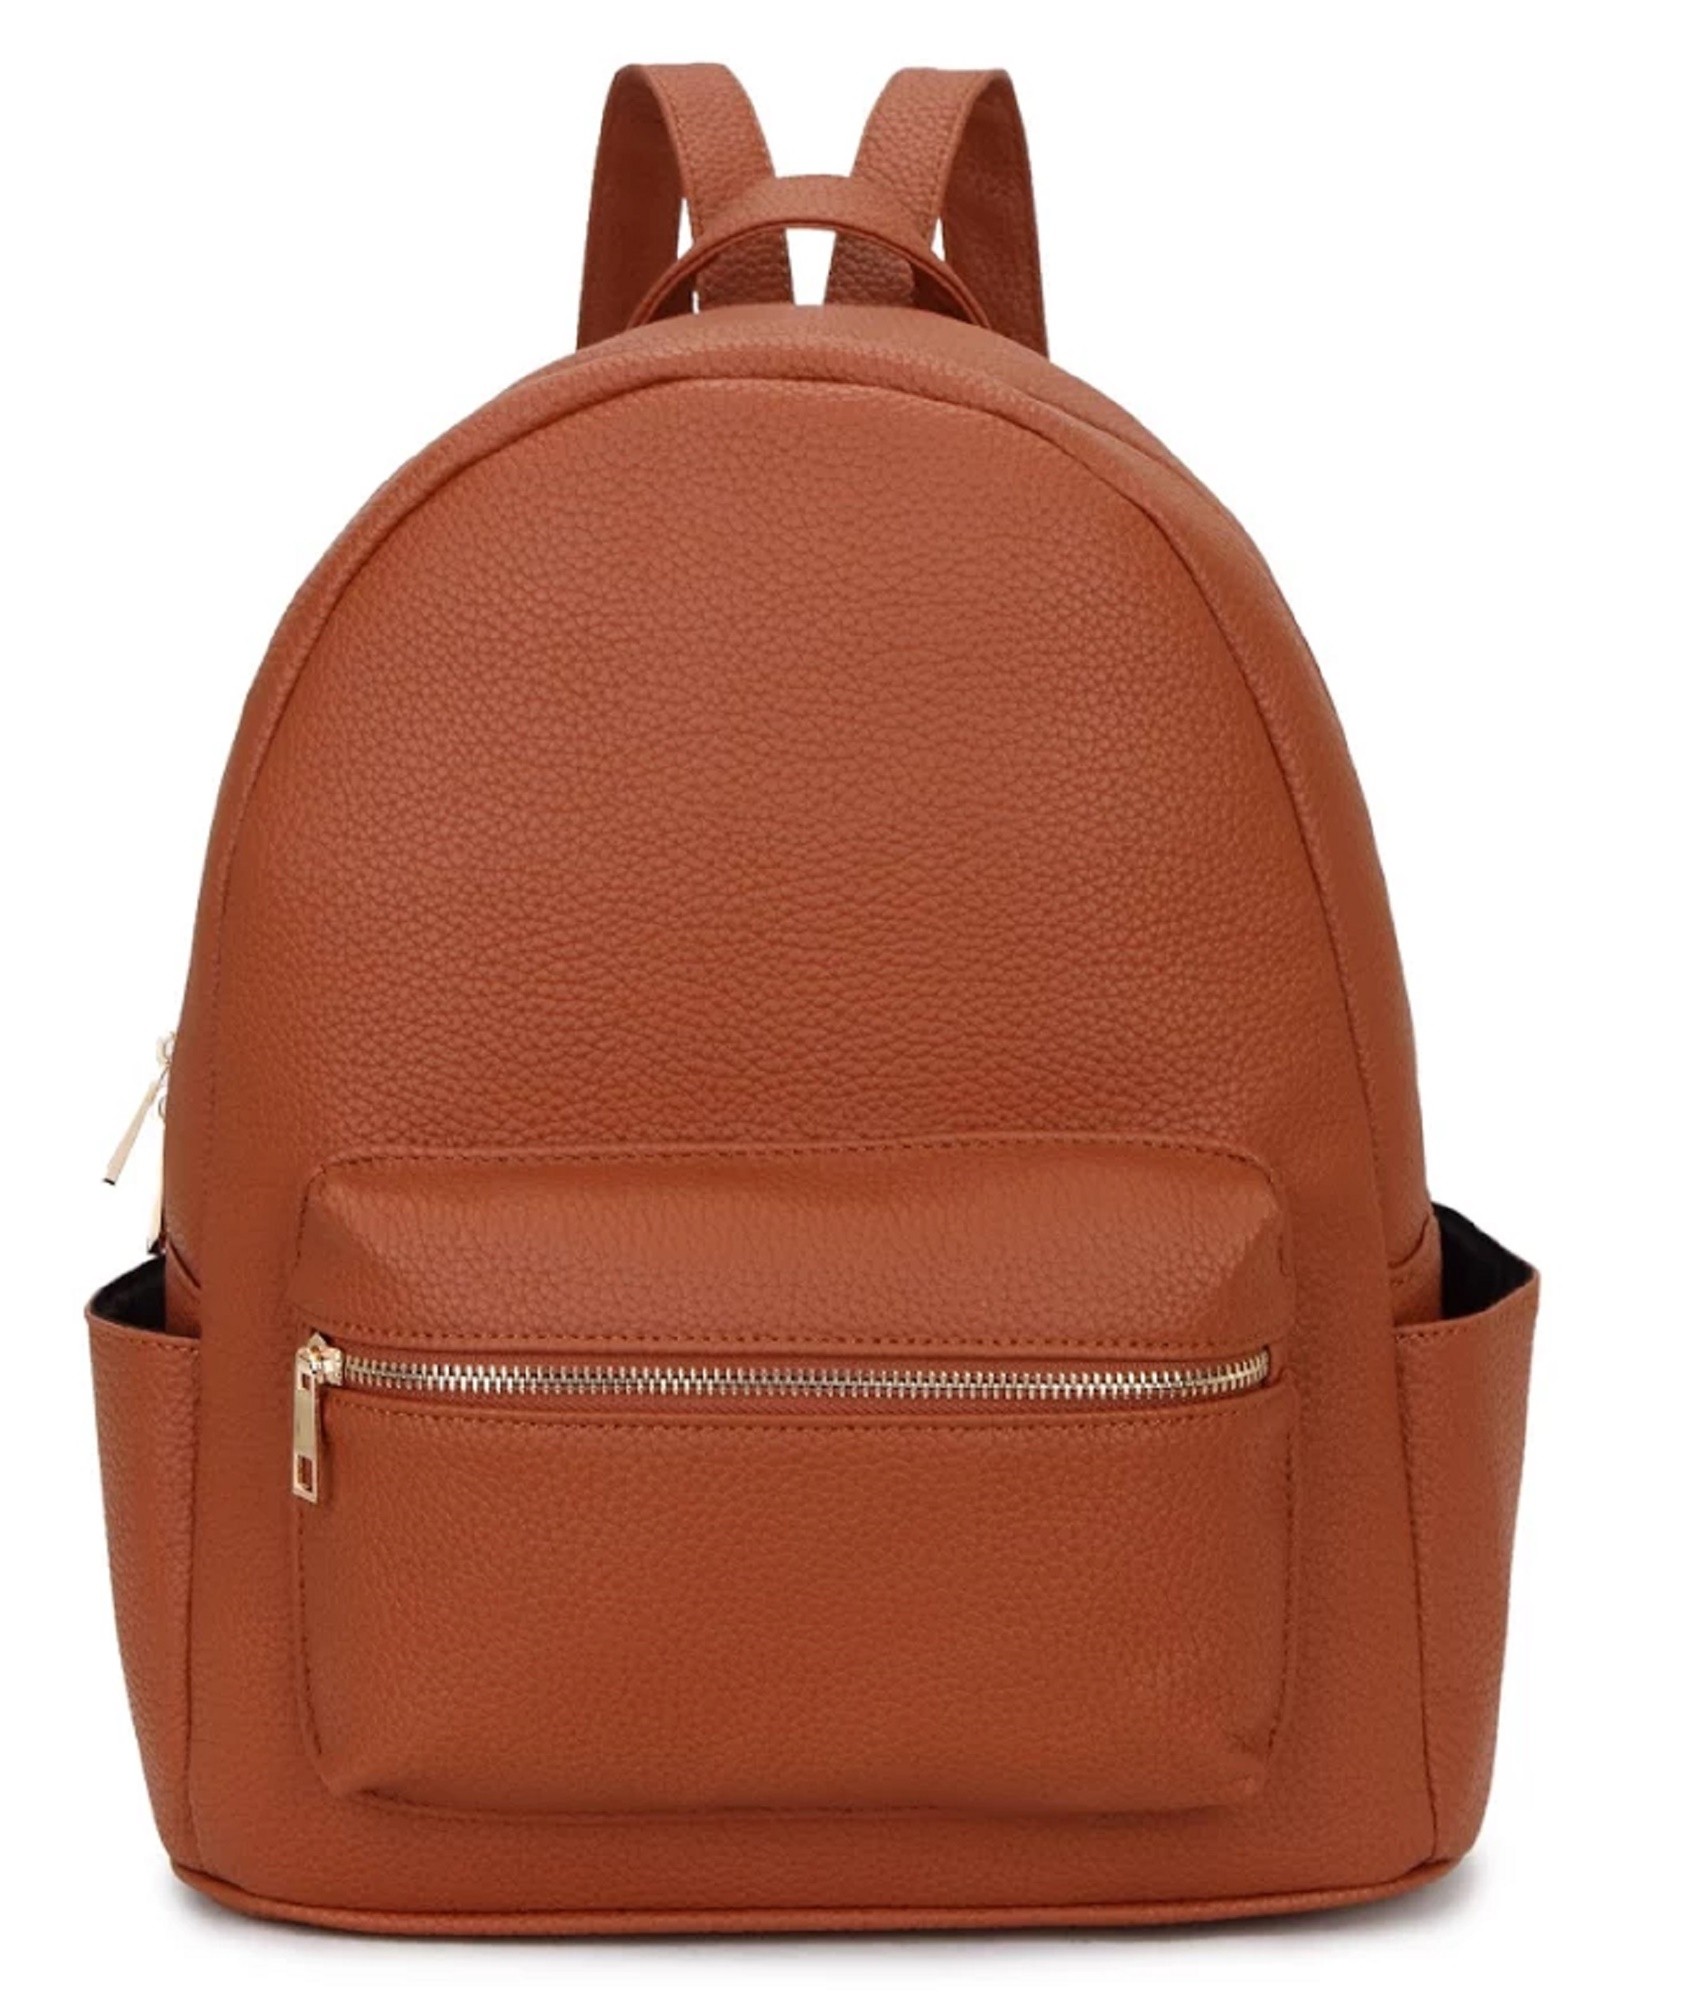 rucksack backpack school Bags Nice Great Brand Handbags Hand Luggage ...